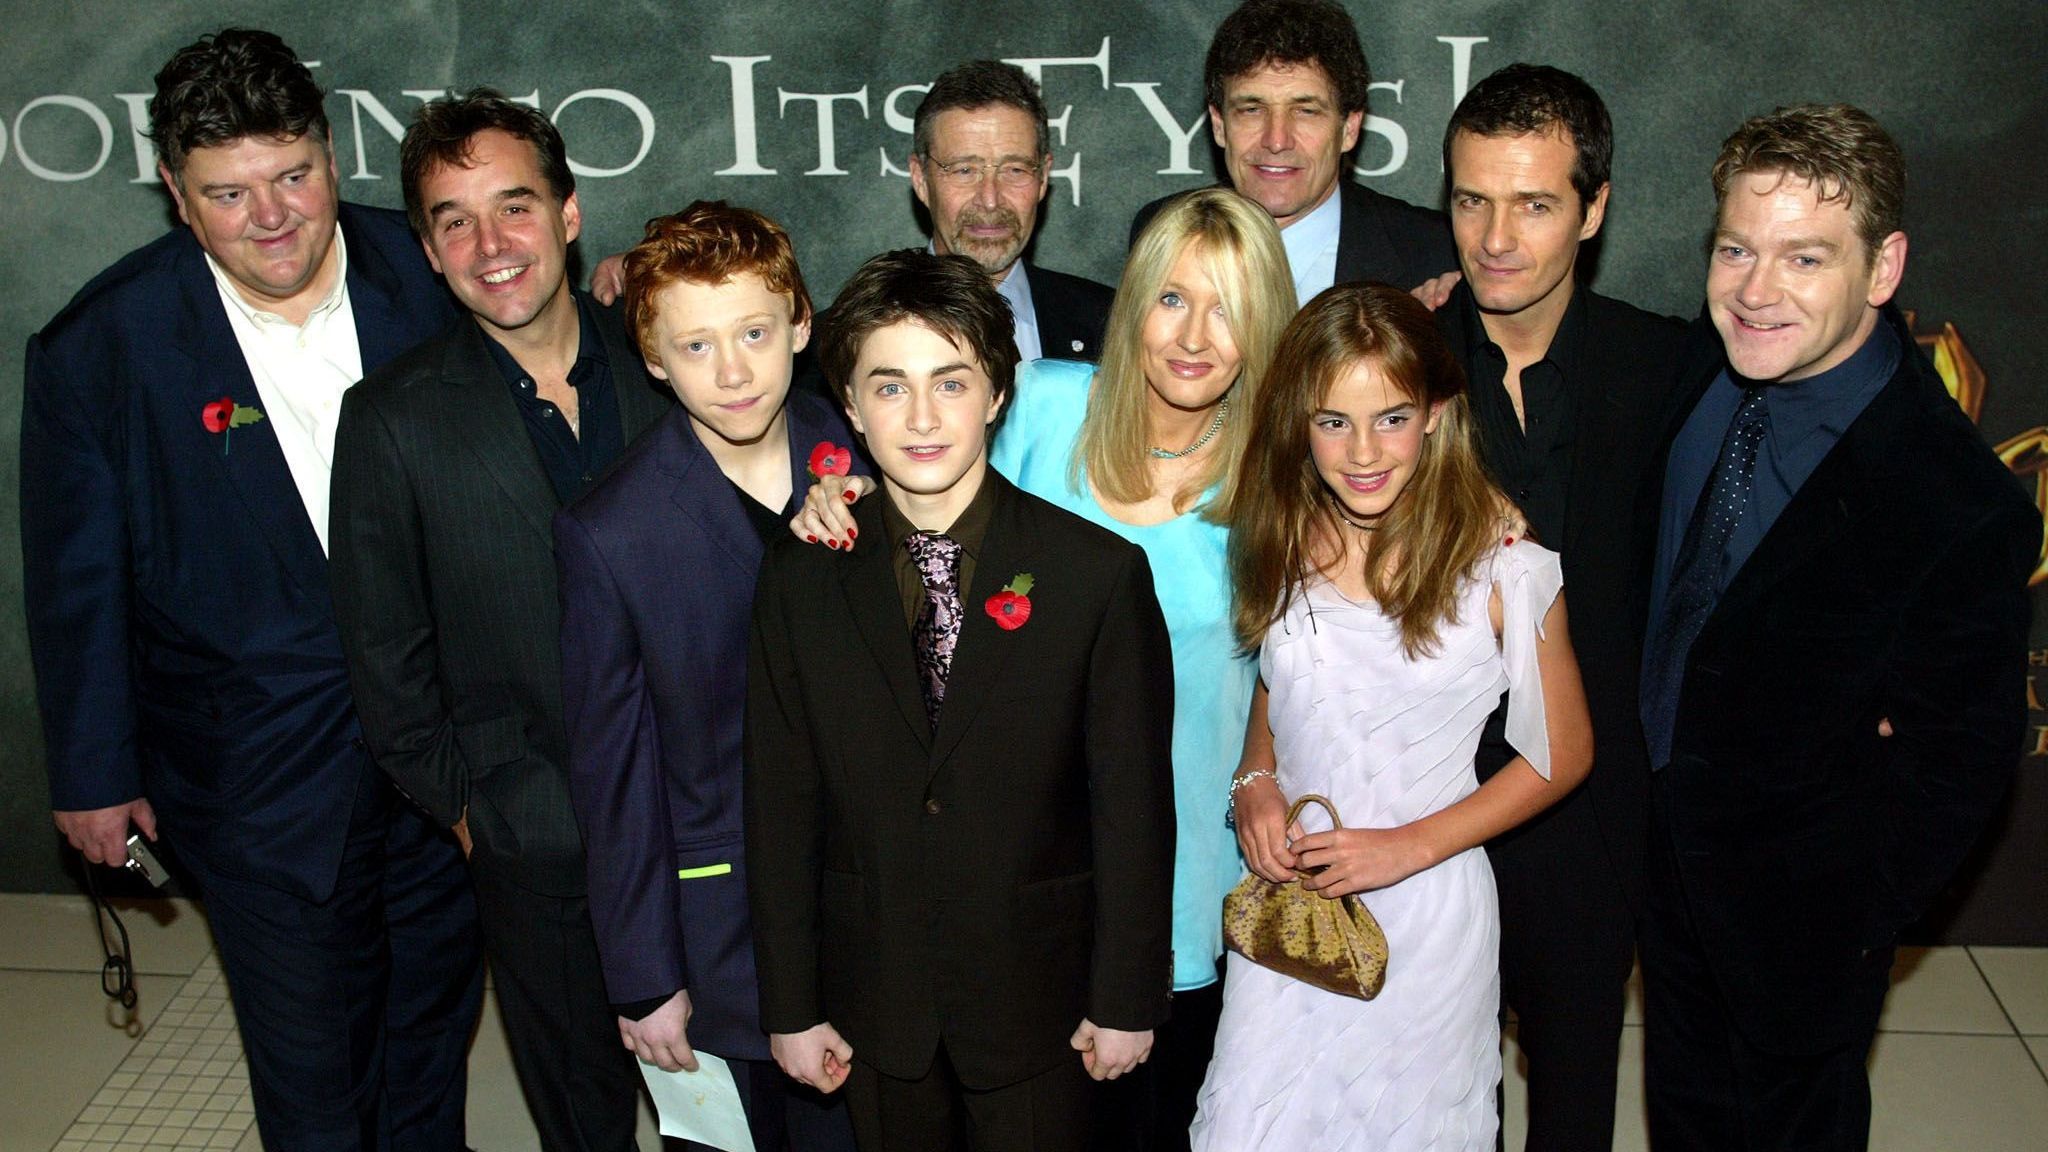 Die Schauspieler der "Harry Potter" Reihe bei der Premiere des zweiten Films in London.